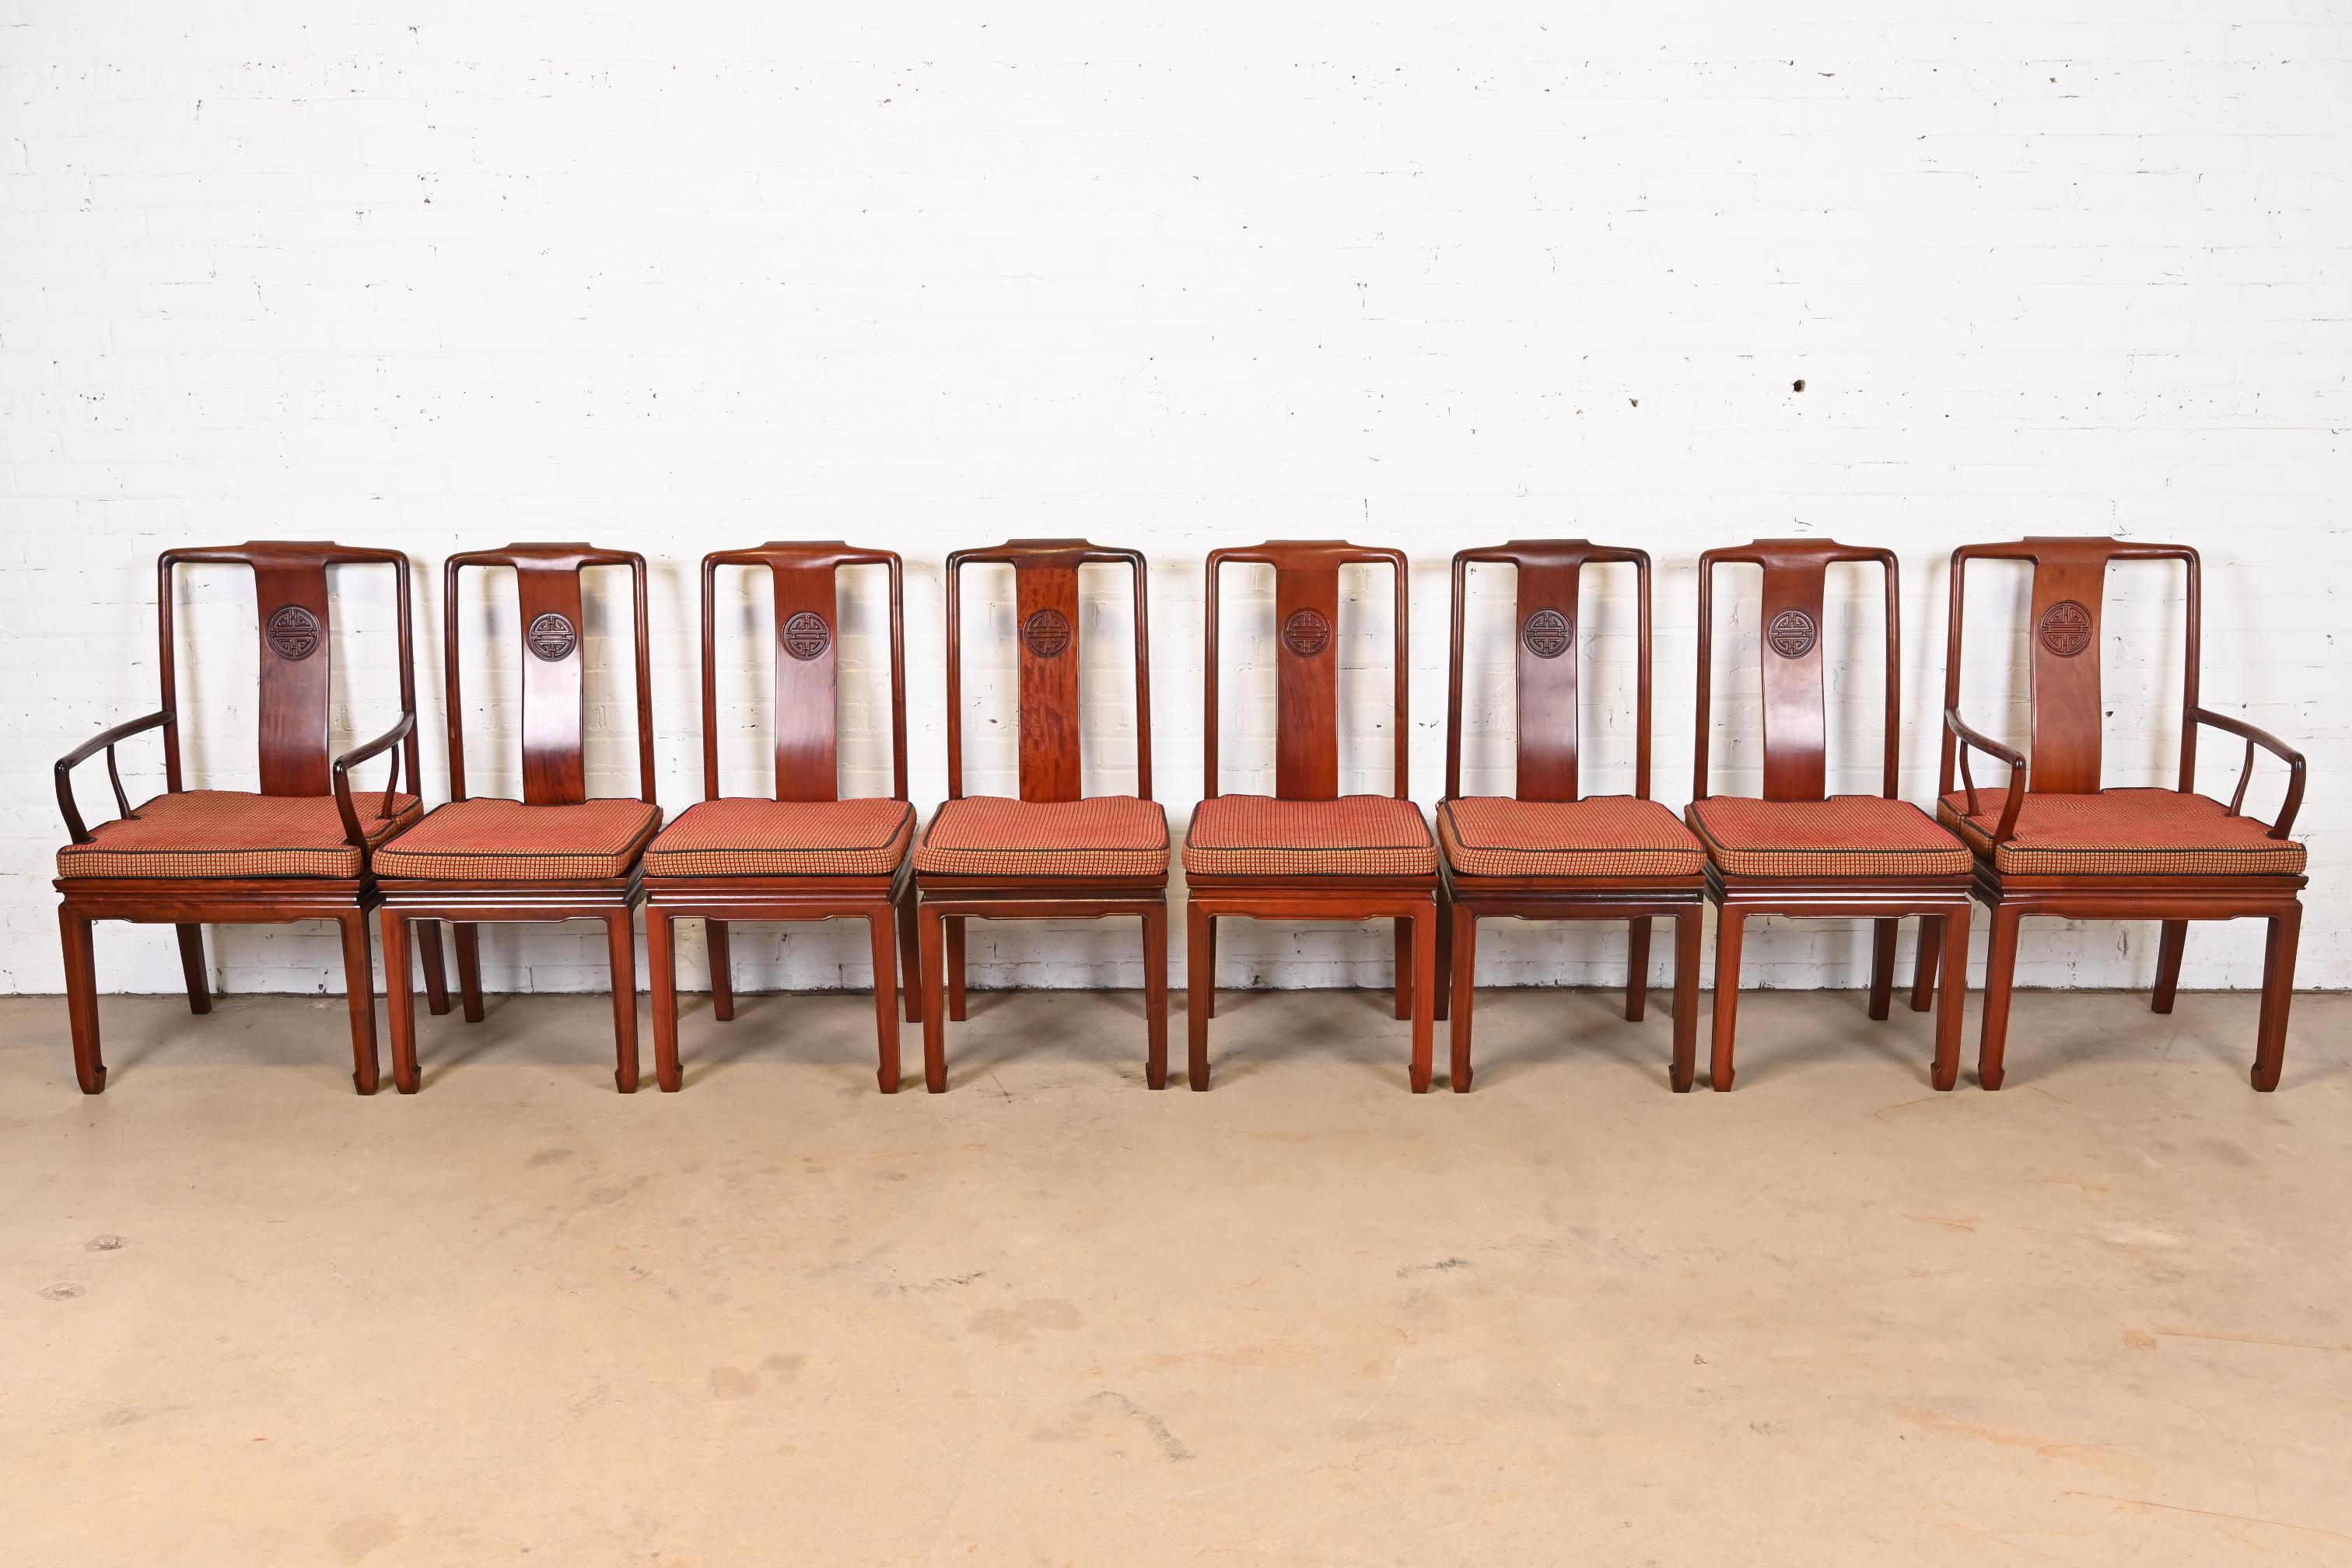 Magnifique ensemble de huit chaises de salle à manger Chinoiserie Hollywood Regency, moderne et du milieu du siècle dernier.

À la manière de Henredon

USA, Milieu du 20ème siècle

Piétements en palissandre massif sculpté, avec coussins d'assise